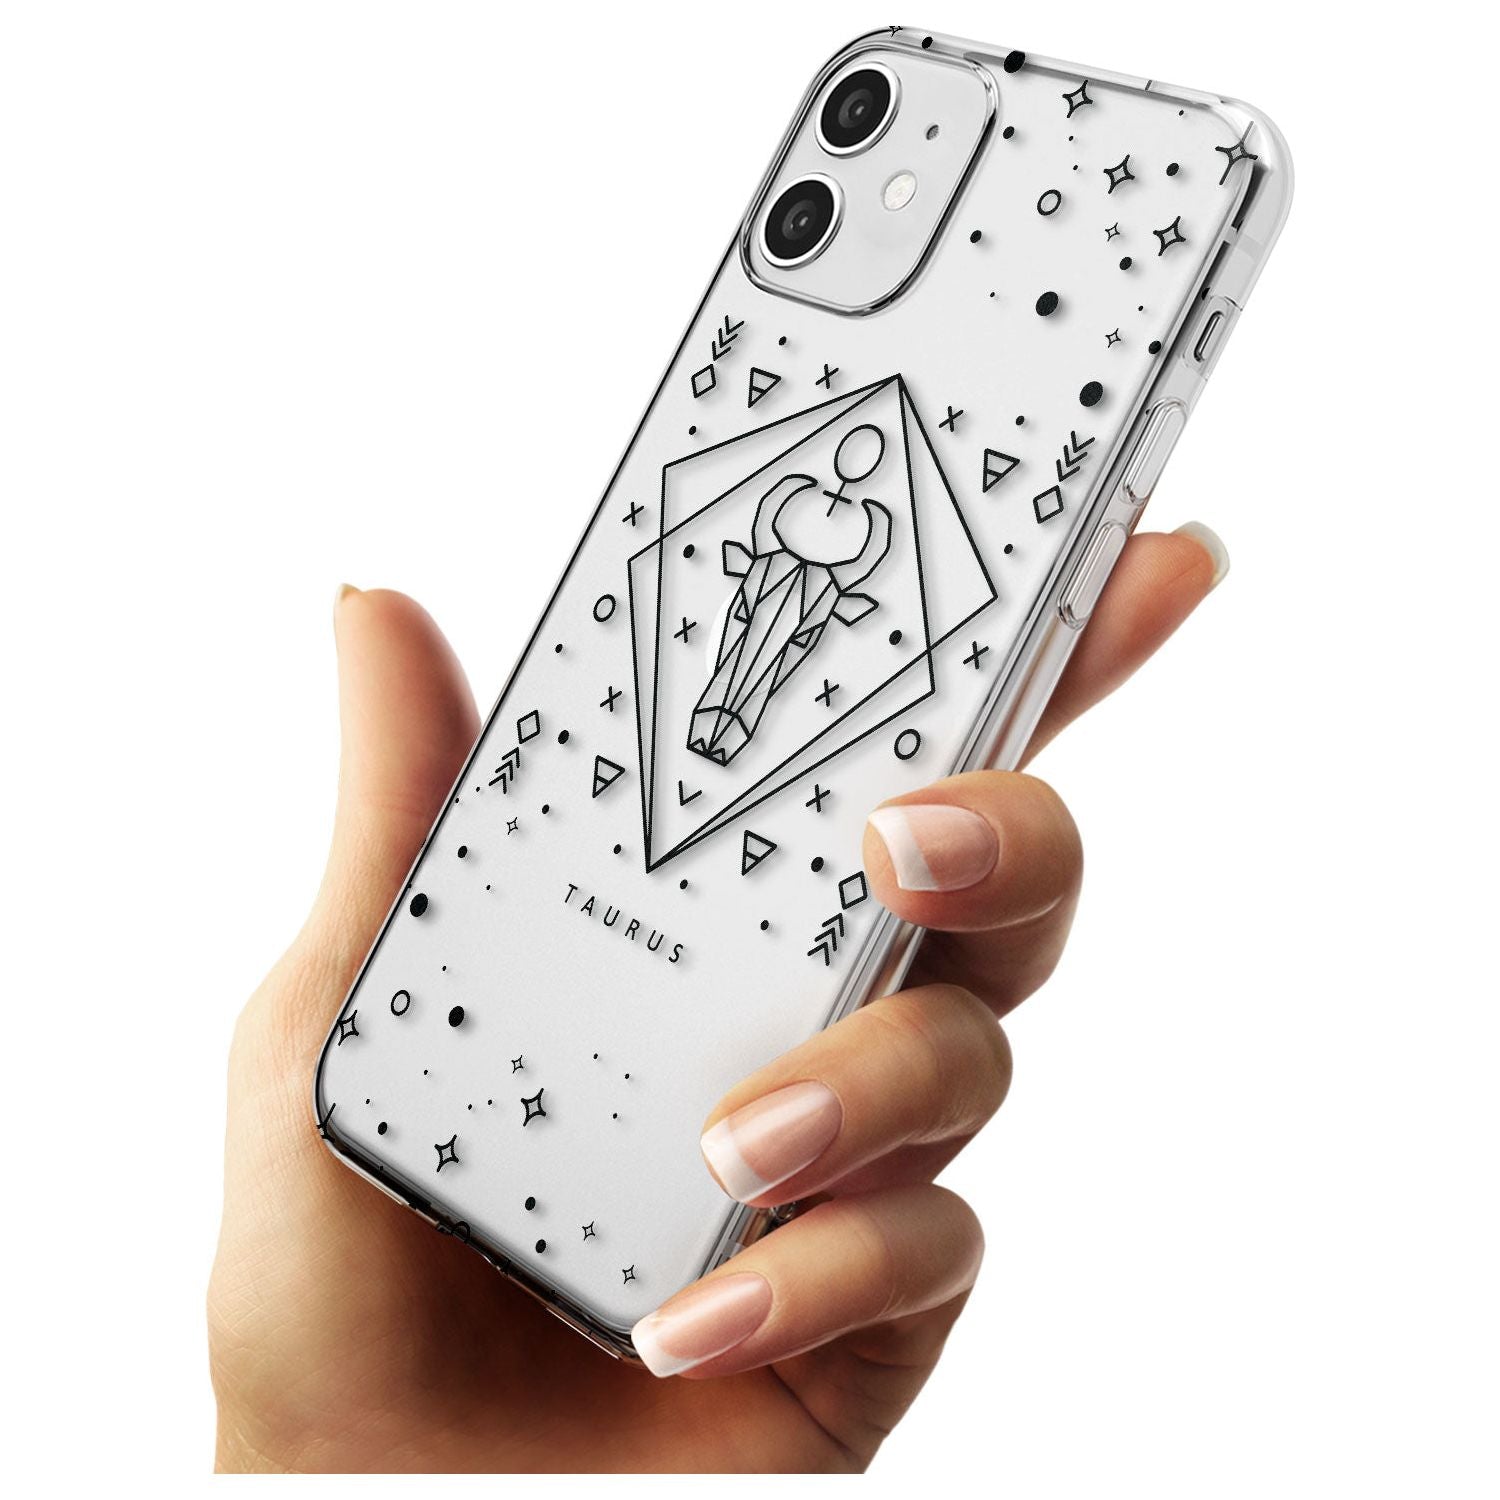 Taurus Emblem - Transparent Design Slim TPU Phone Case for iPhone 11